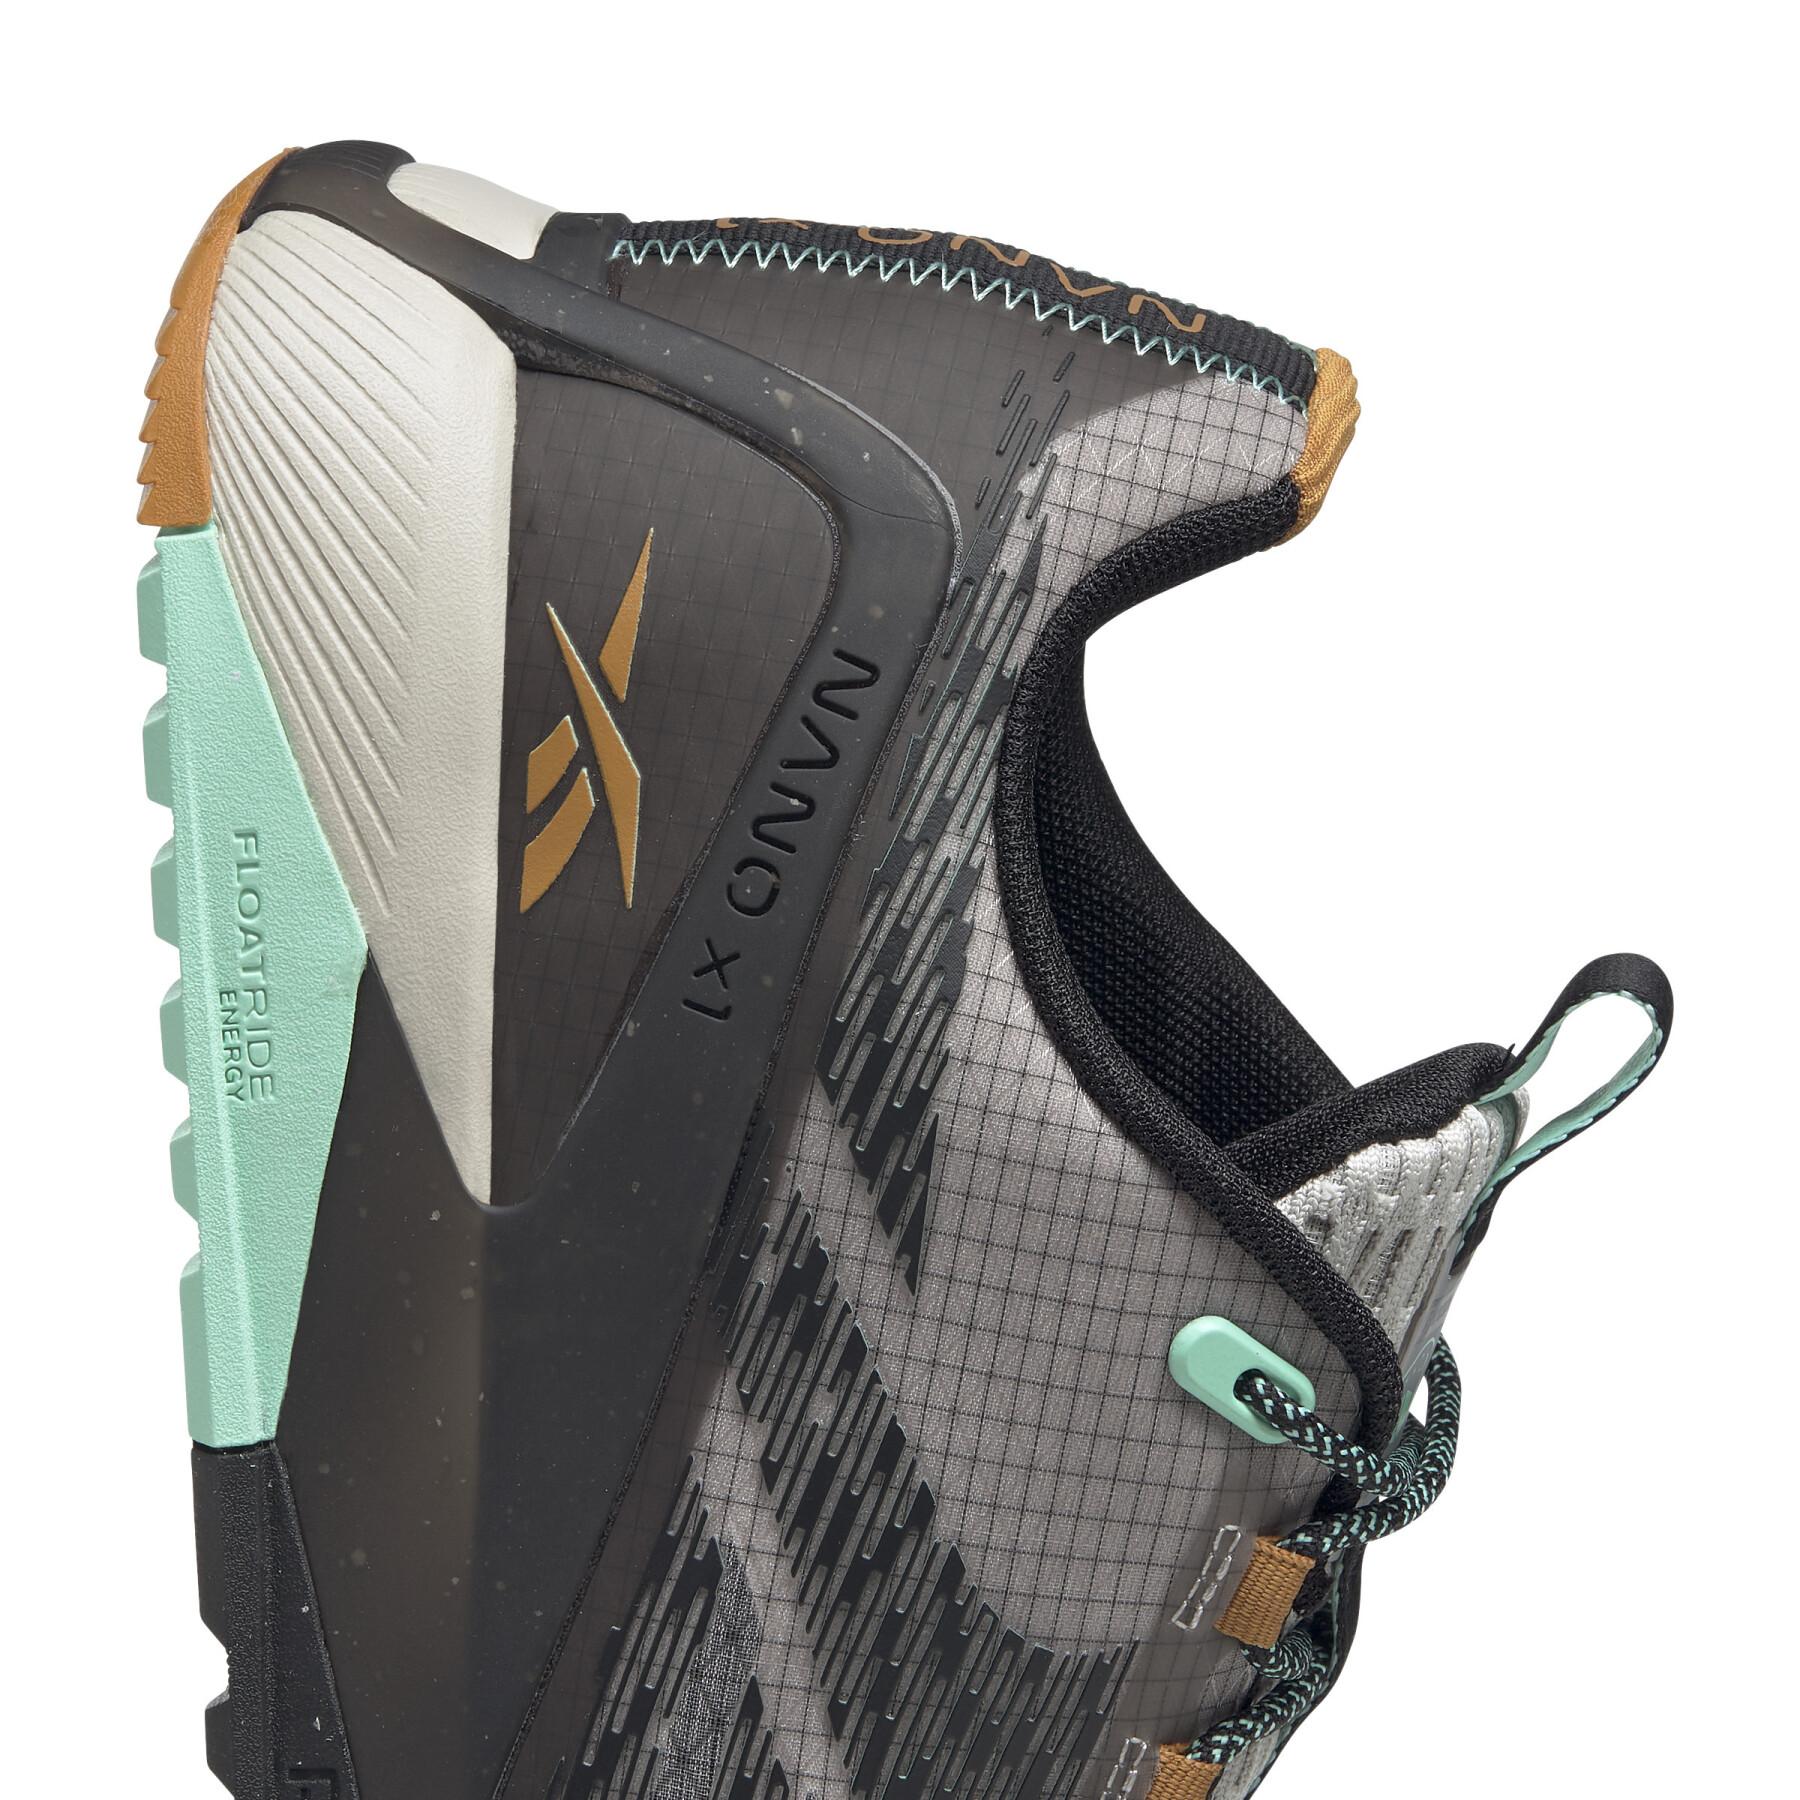 Schuhe Reebok Nano X1 Adventure